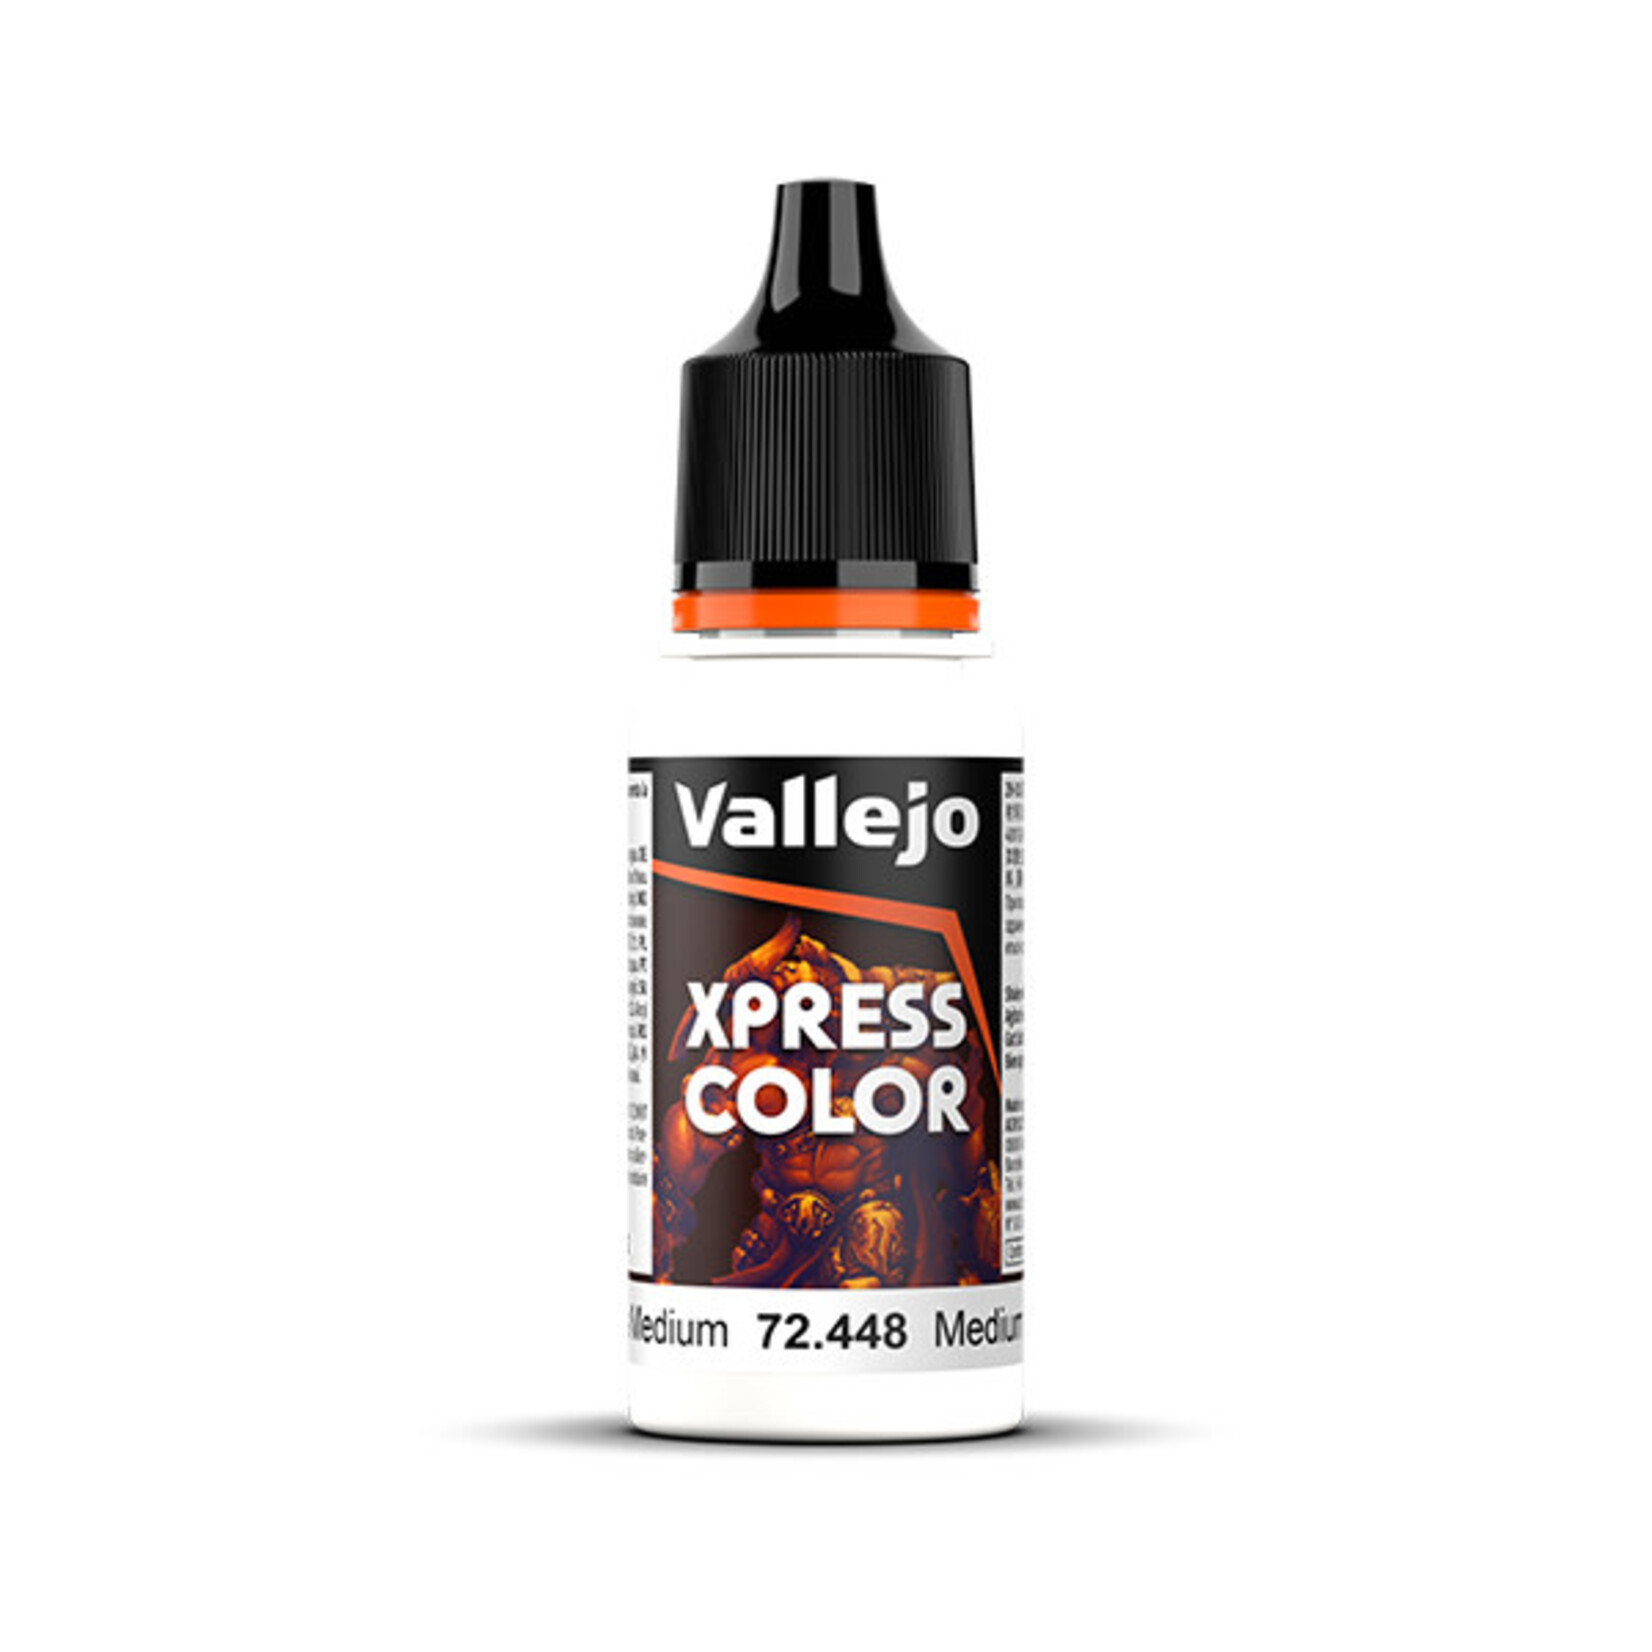 Vallejo Xpress Color Xpress Medium